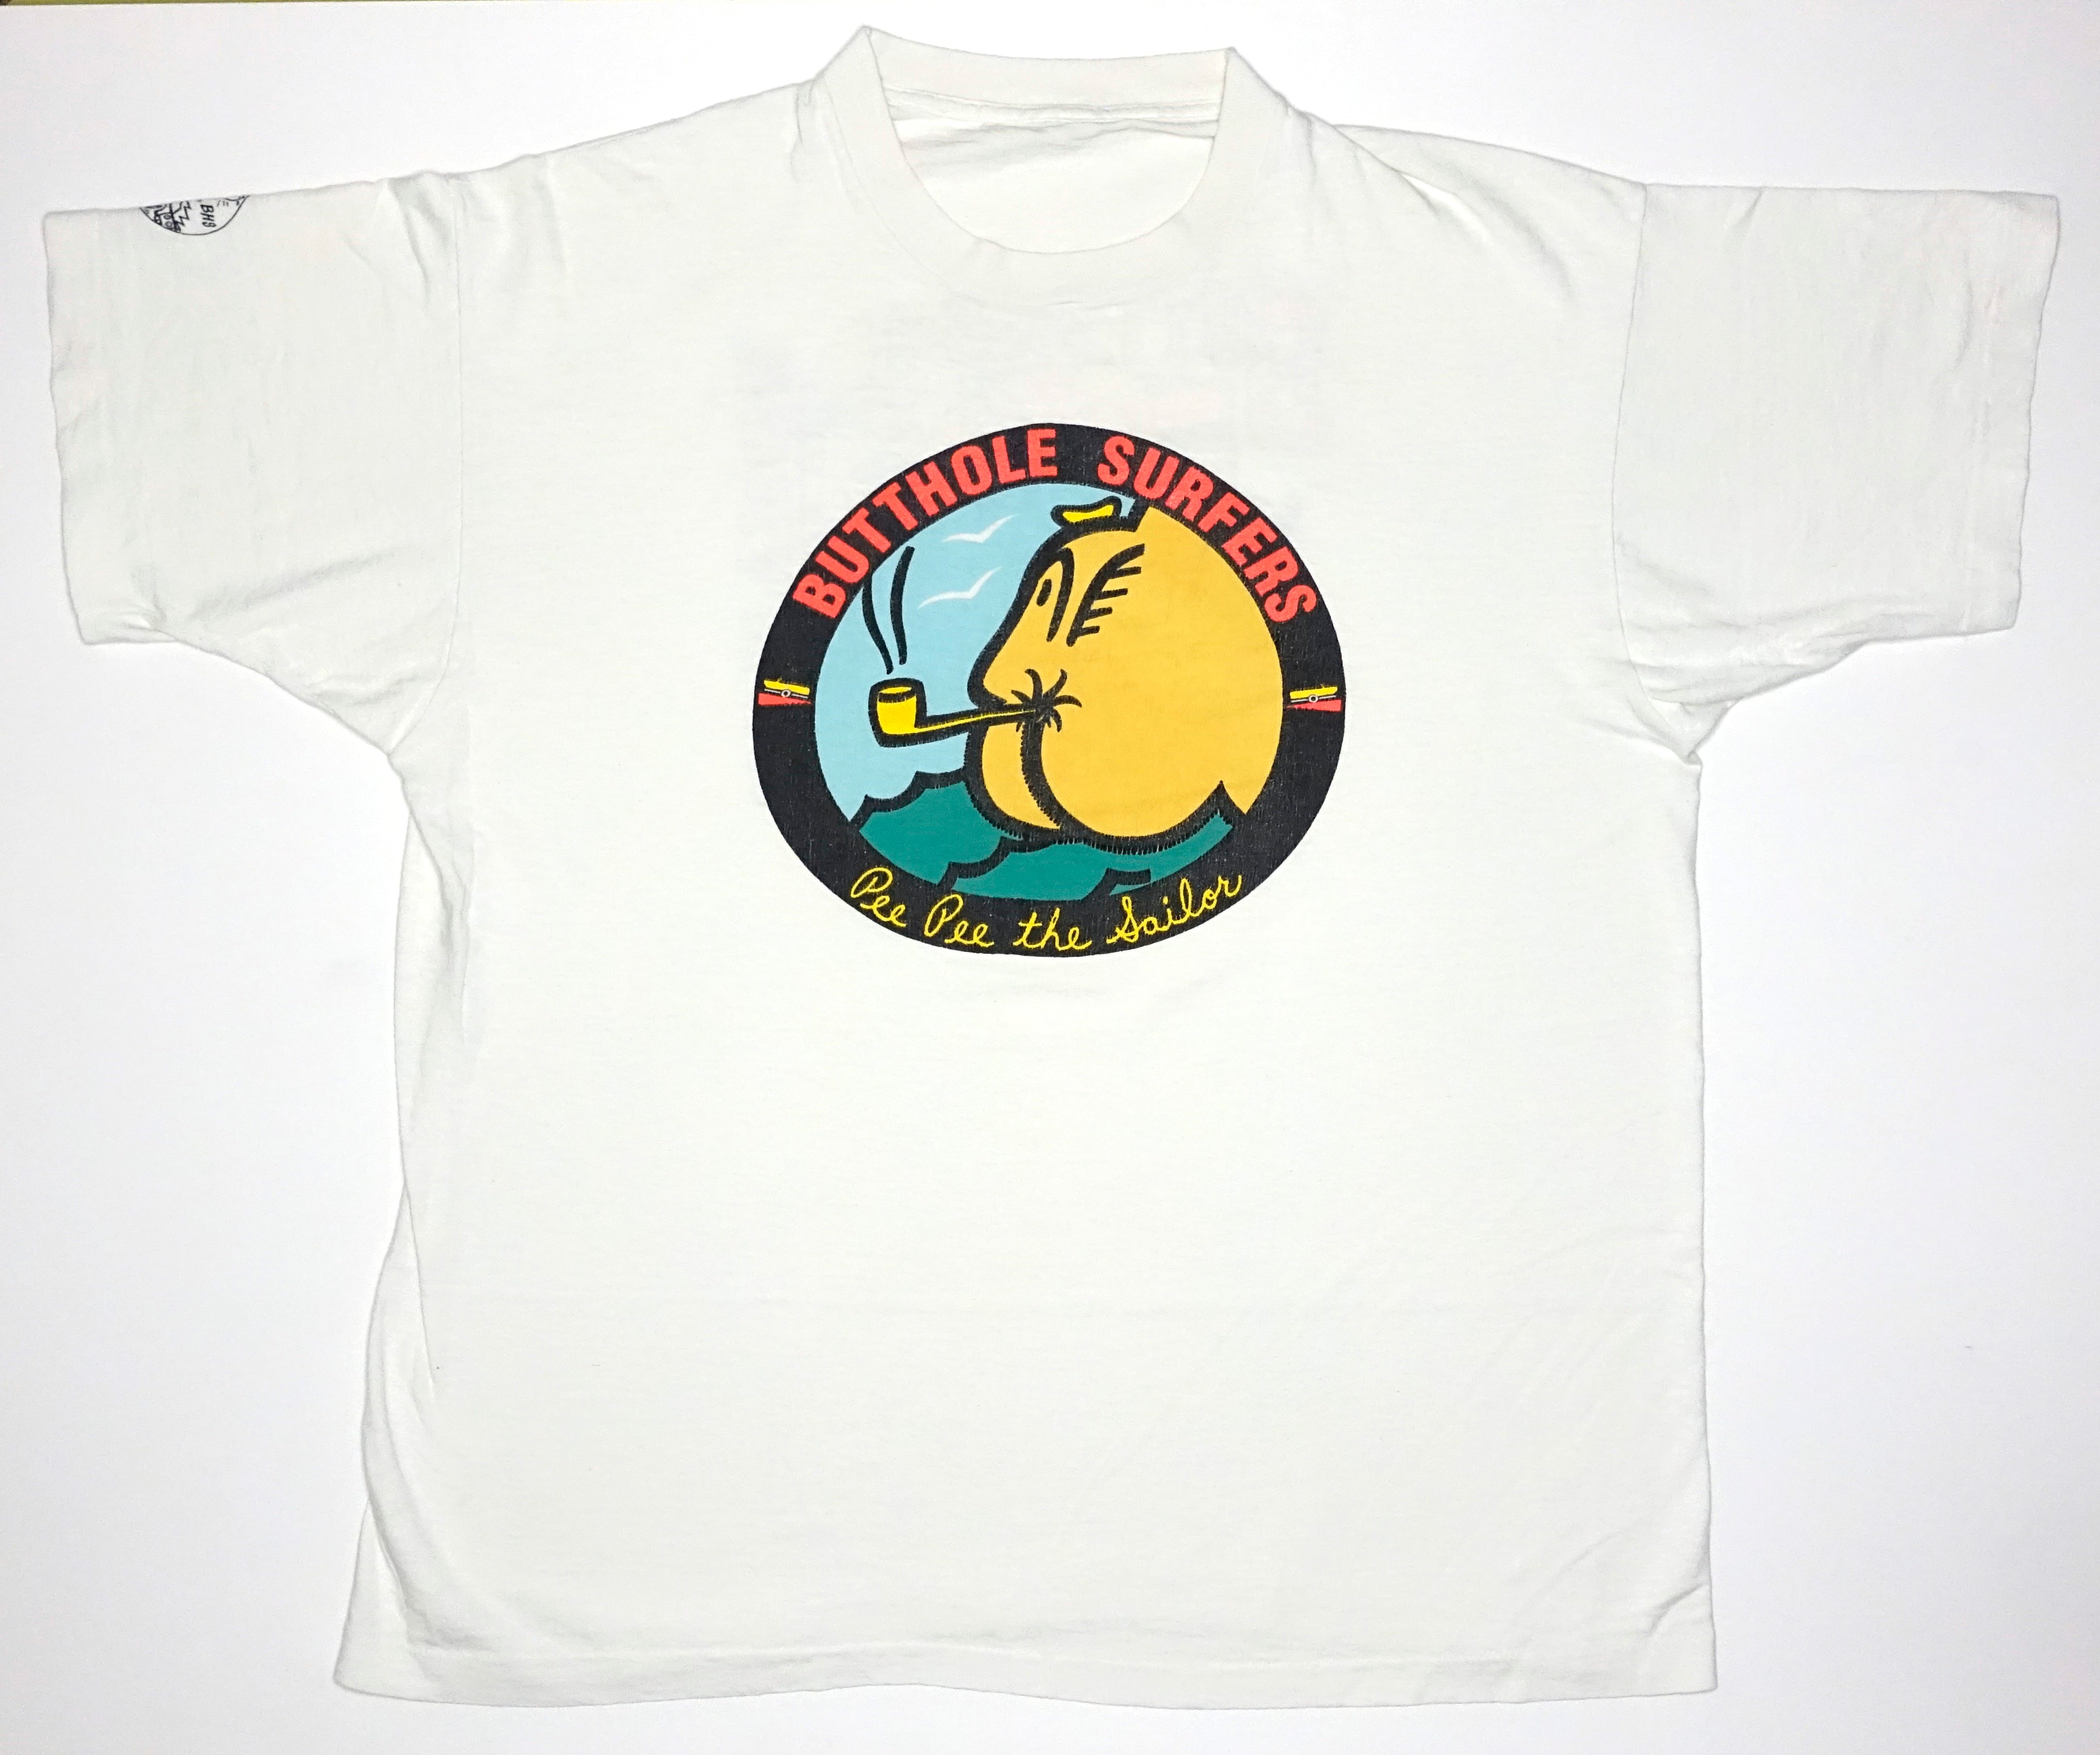 Butthole Surfers - Pee Pee The Sailor Tour Shirt Size XL